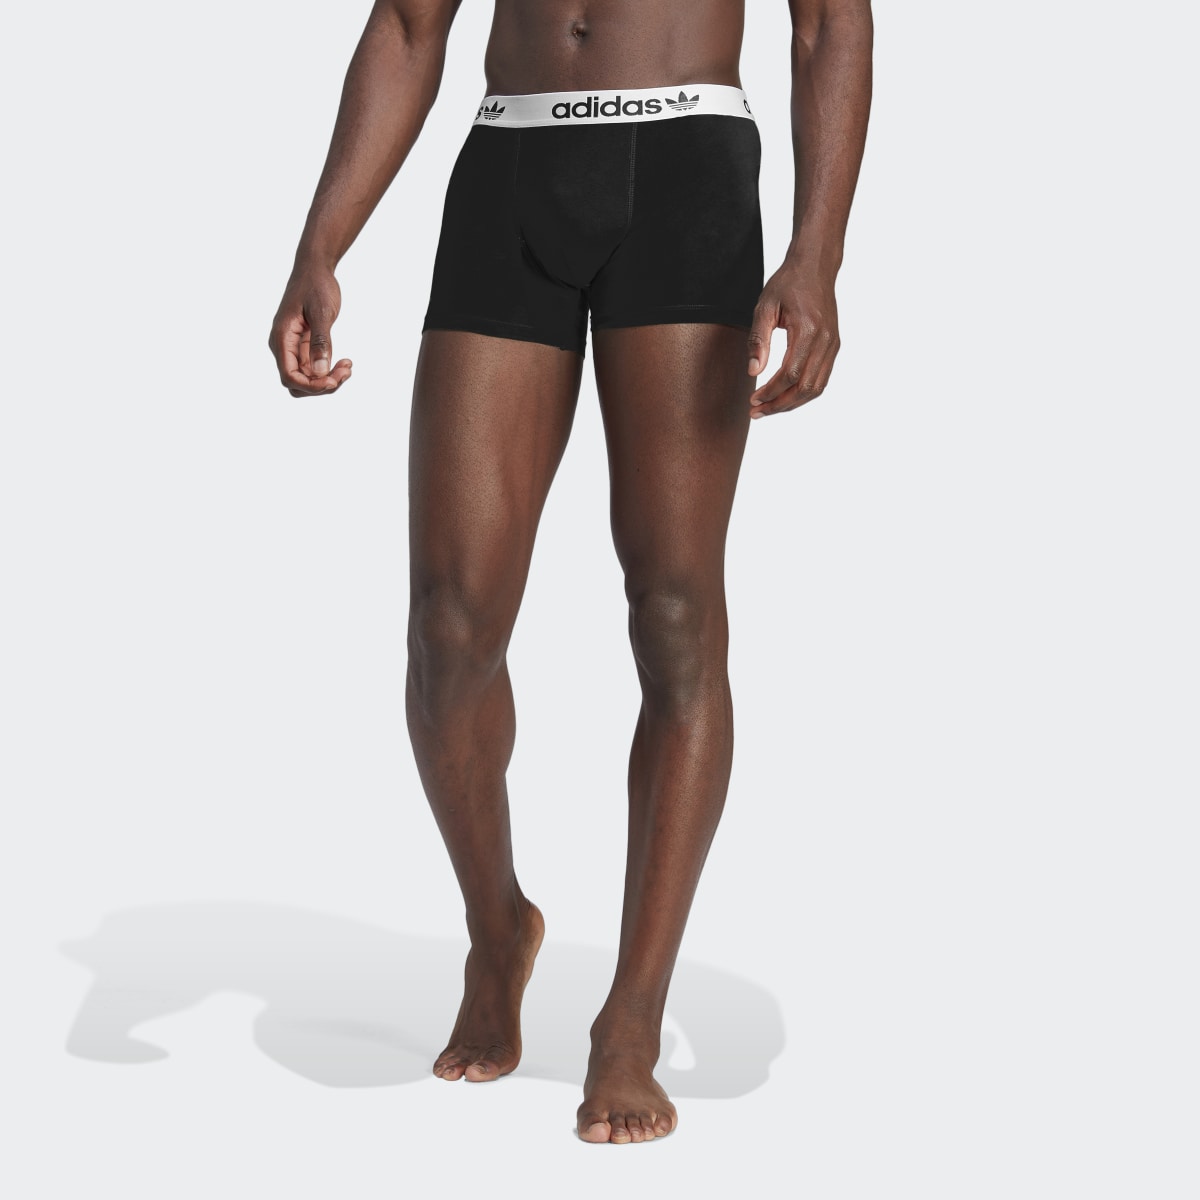 Adidas Boxers de Algodão Comfort Flex – 2 pares. 4